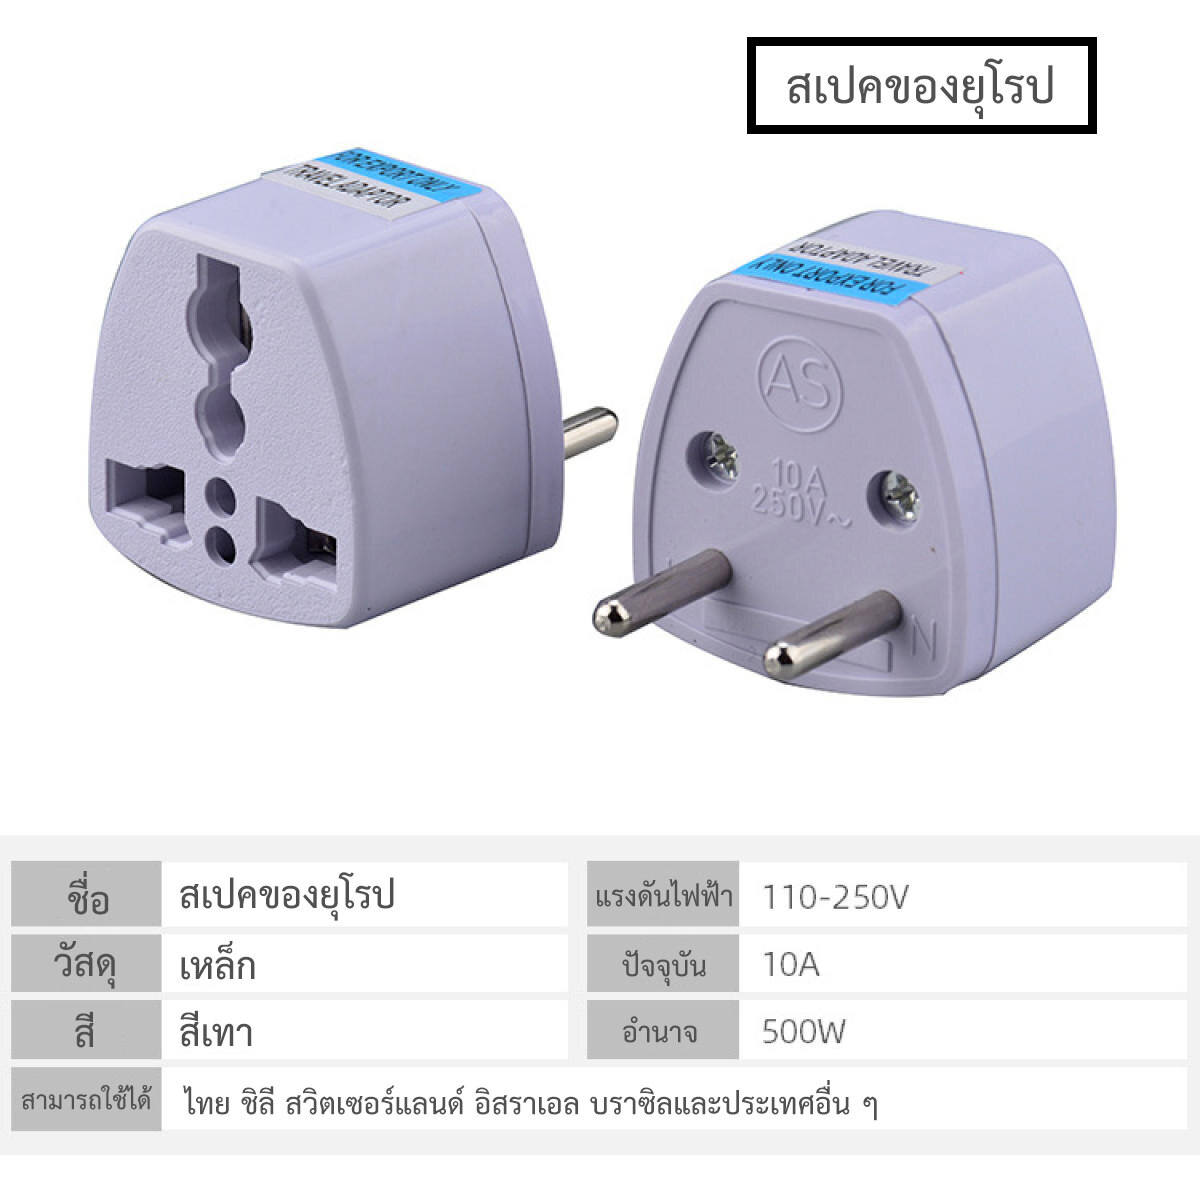 ปลั๊กแปลงอเนกประสงค์ Europe Travel Socket Adapter Charger Power Adapter Conversion Plugs Converter To EU Plug เหมาะสำหรับใช้ในประเทศไทย